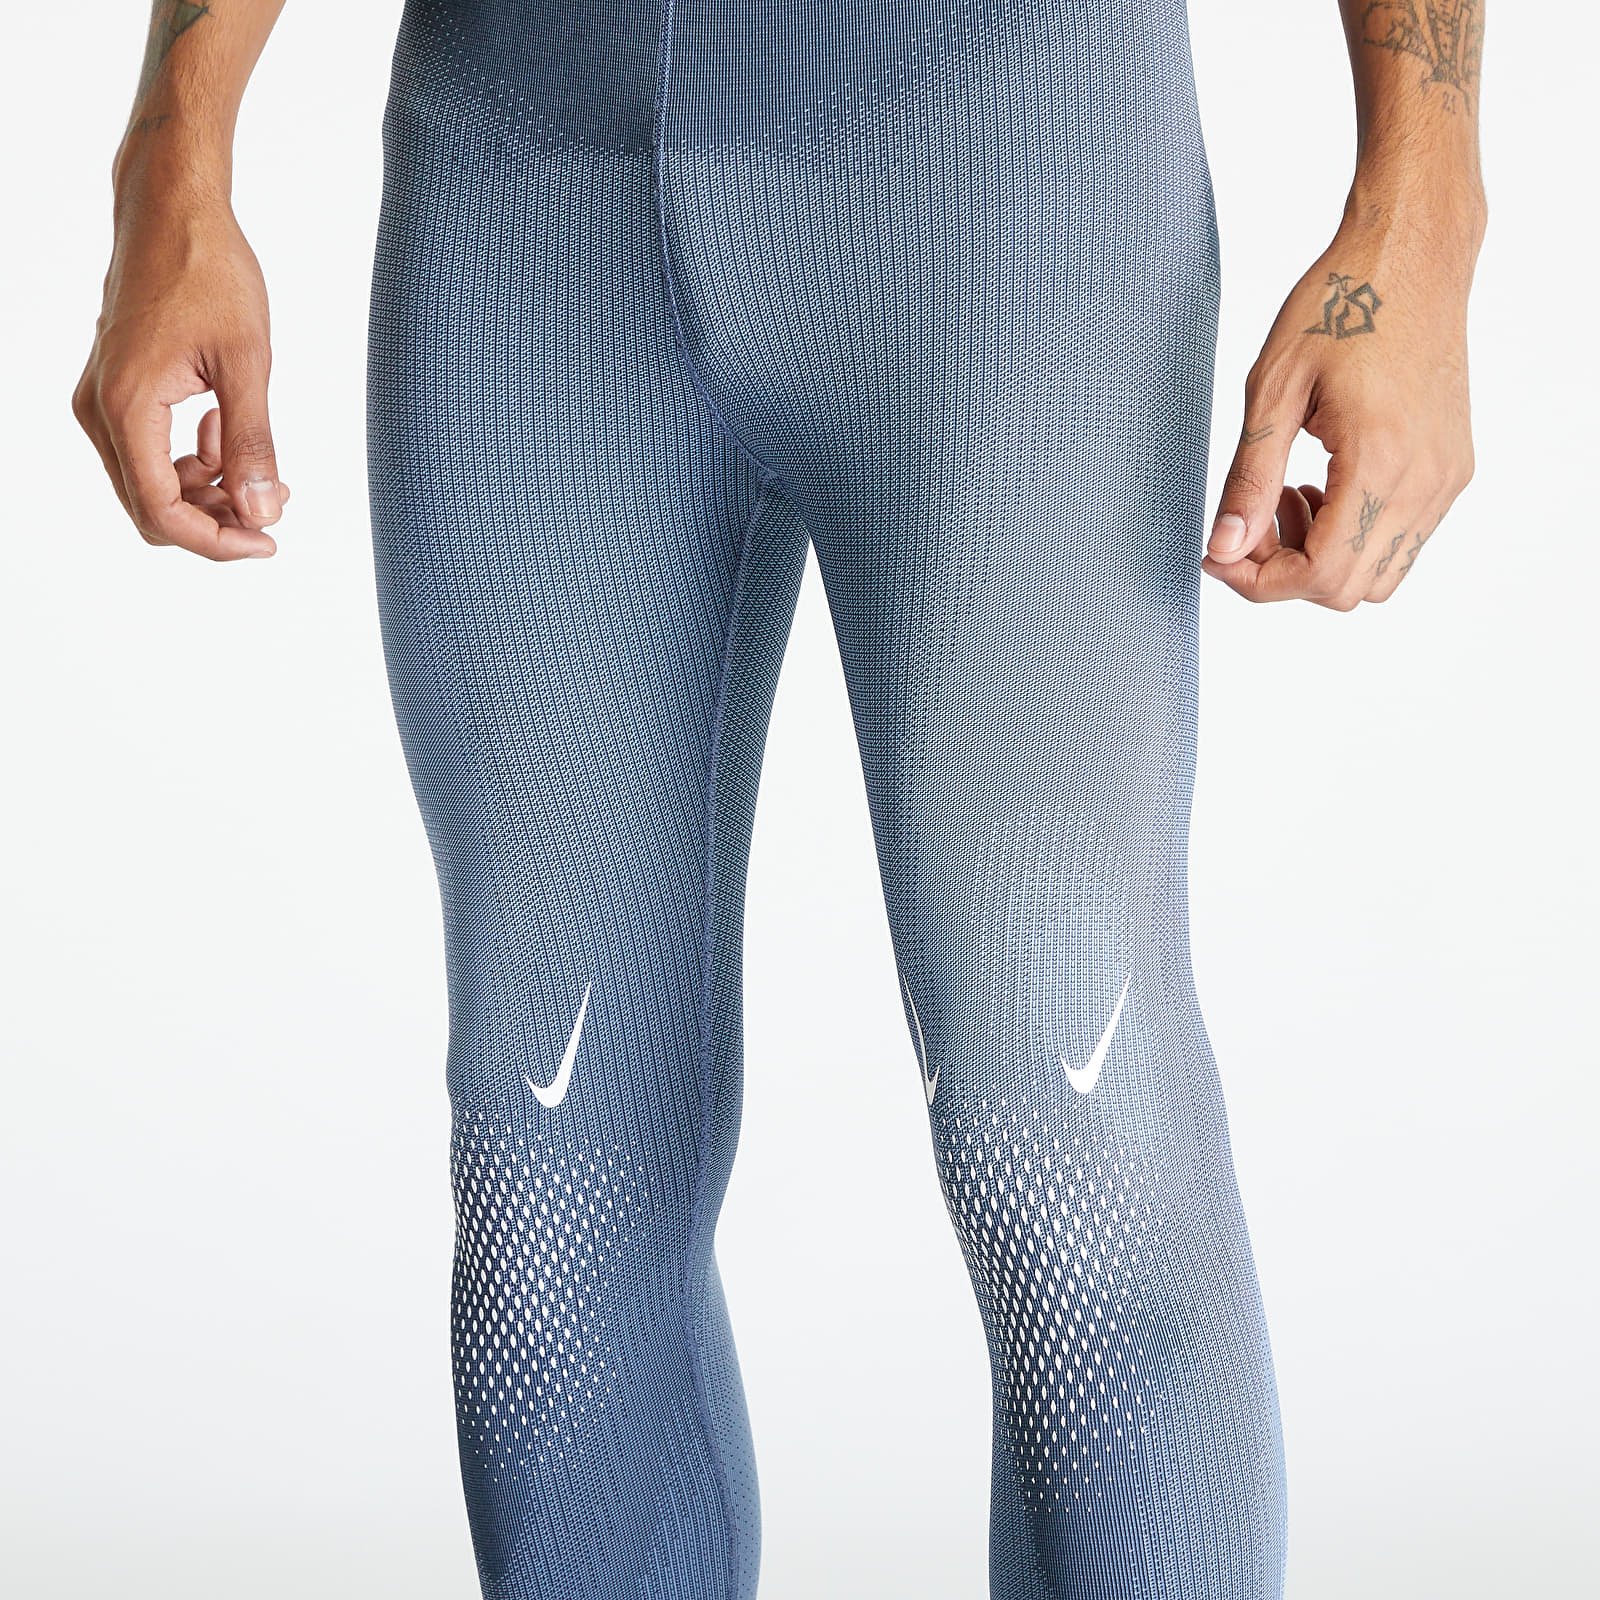 Nike x Drake NOCTA NRG Dri-FIT Men's Leggings Blue DV3657-479